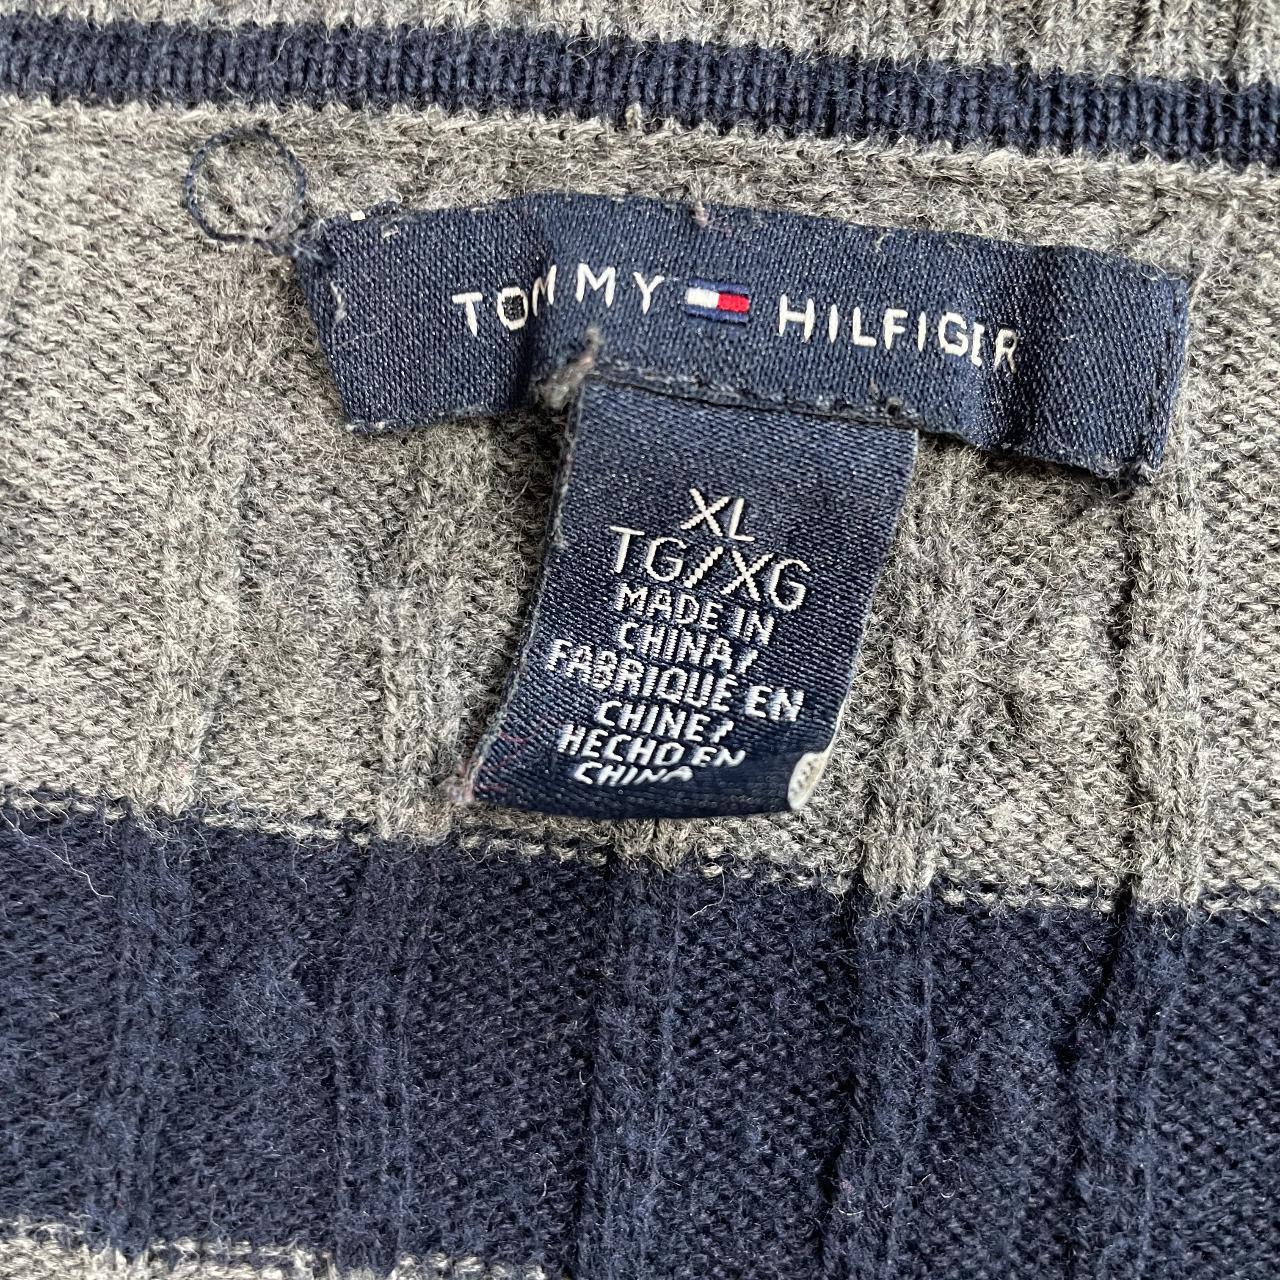 Tommy Hilfiger V neck Knit jumper in... - Depop